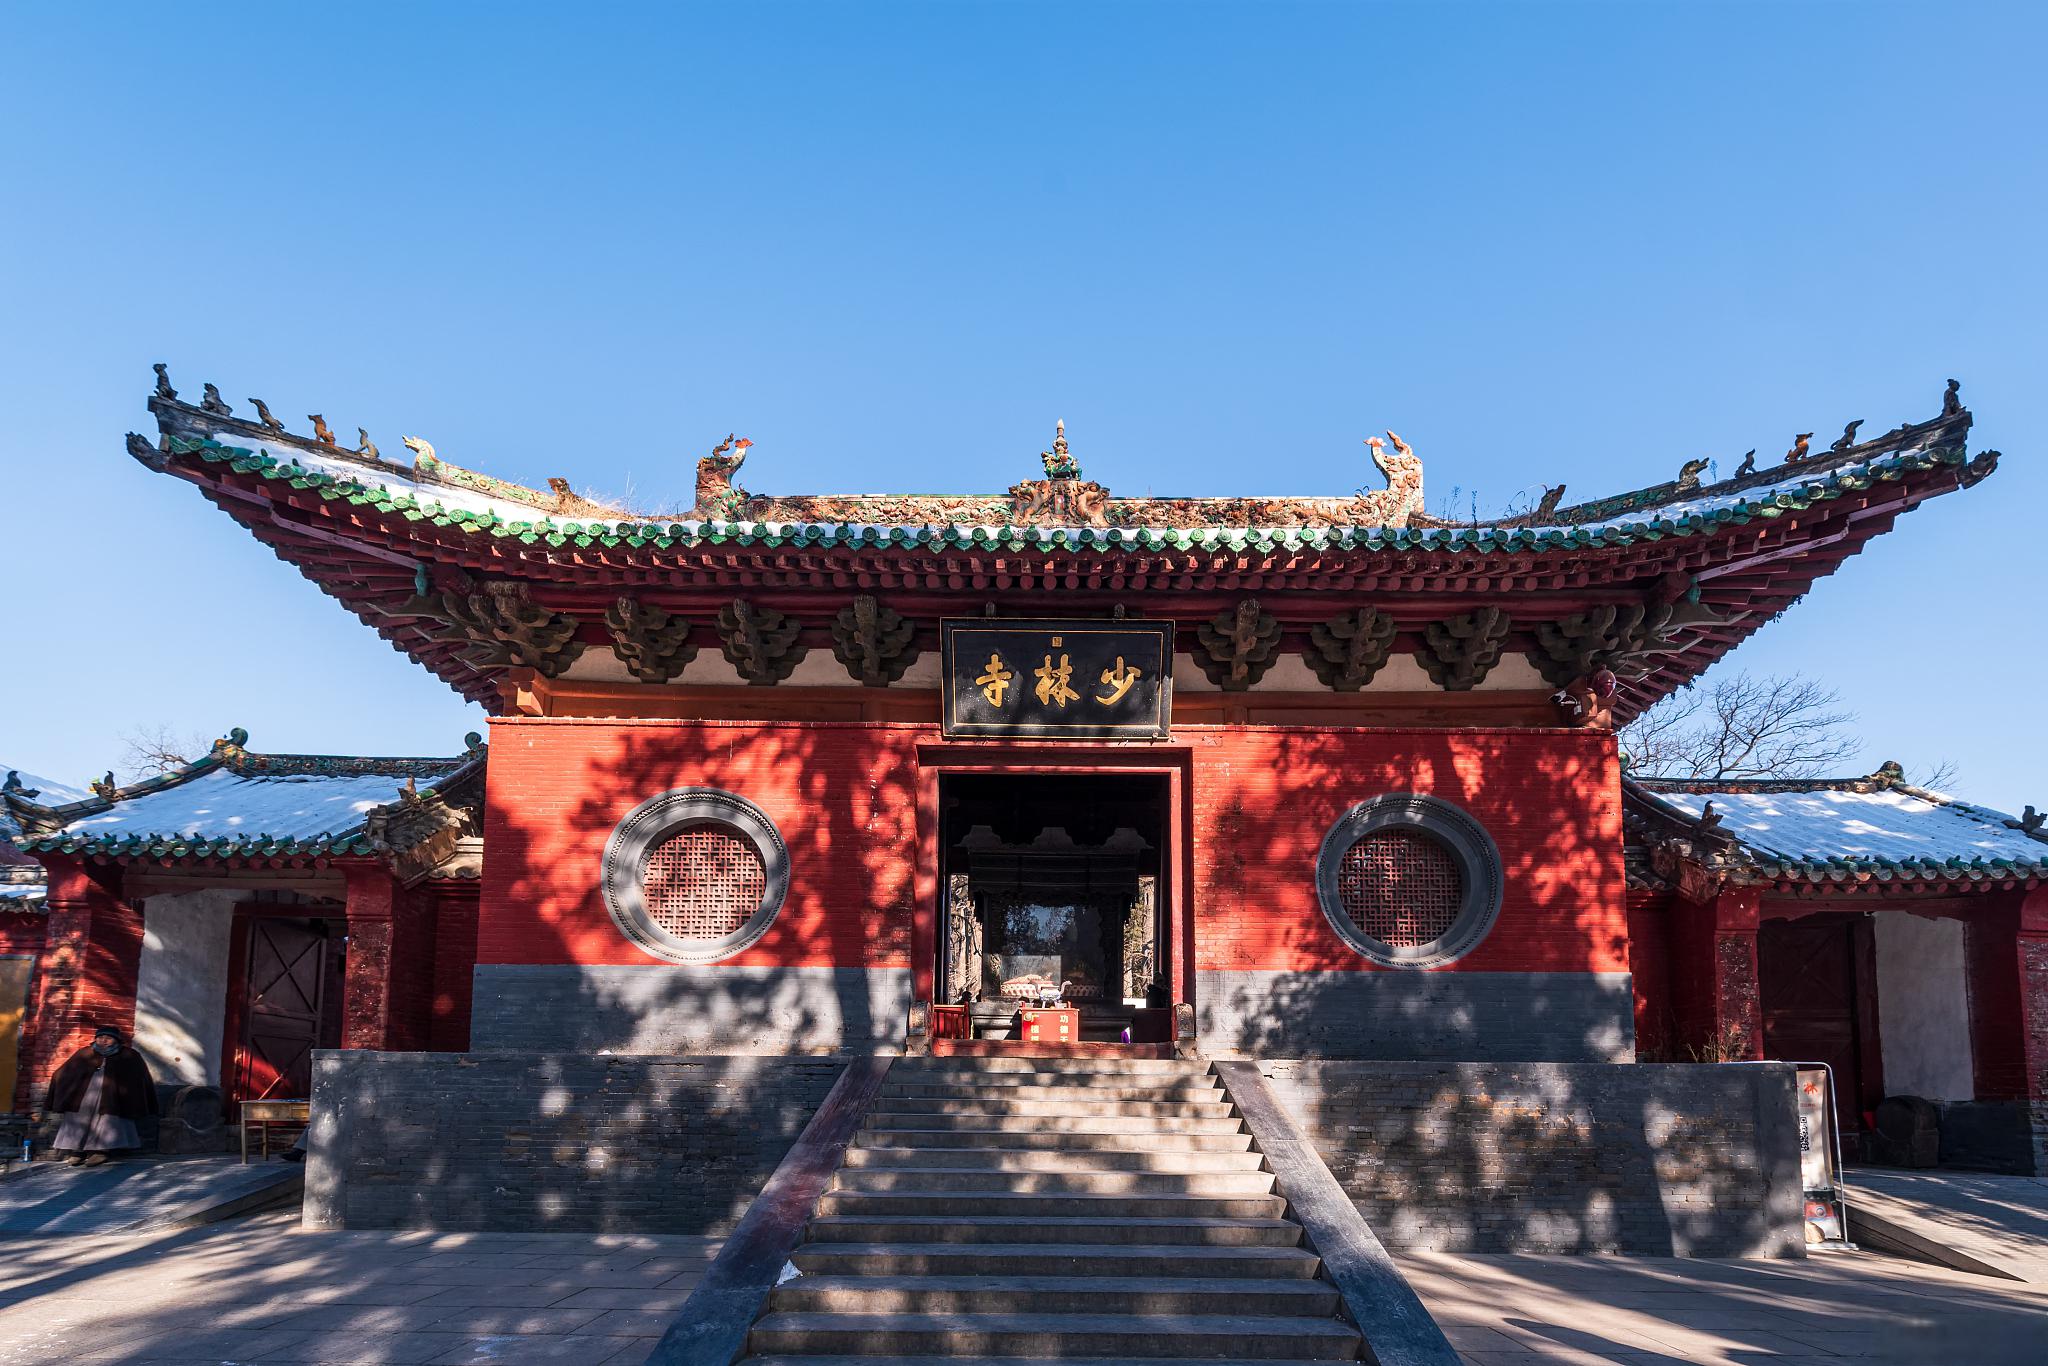 嵩山少林寺旅游攻略 嵩山少林寺位于中国河南省郑州市登封市,是世界